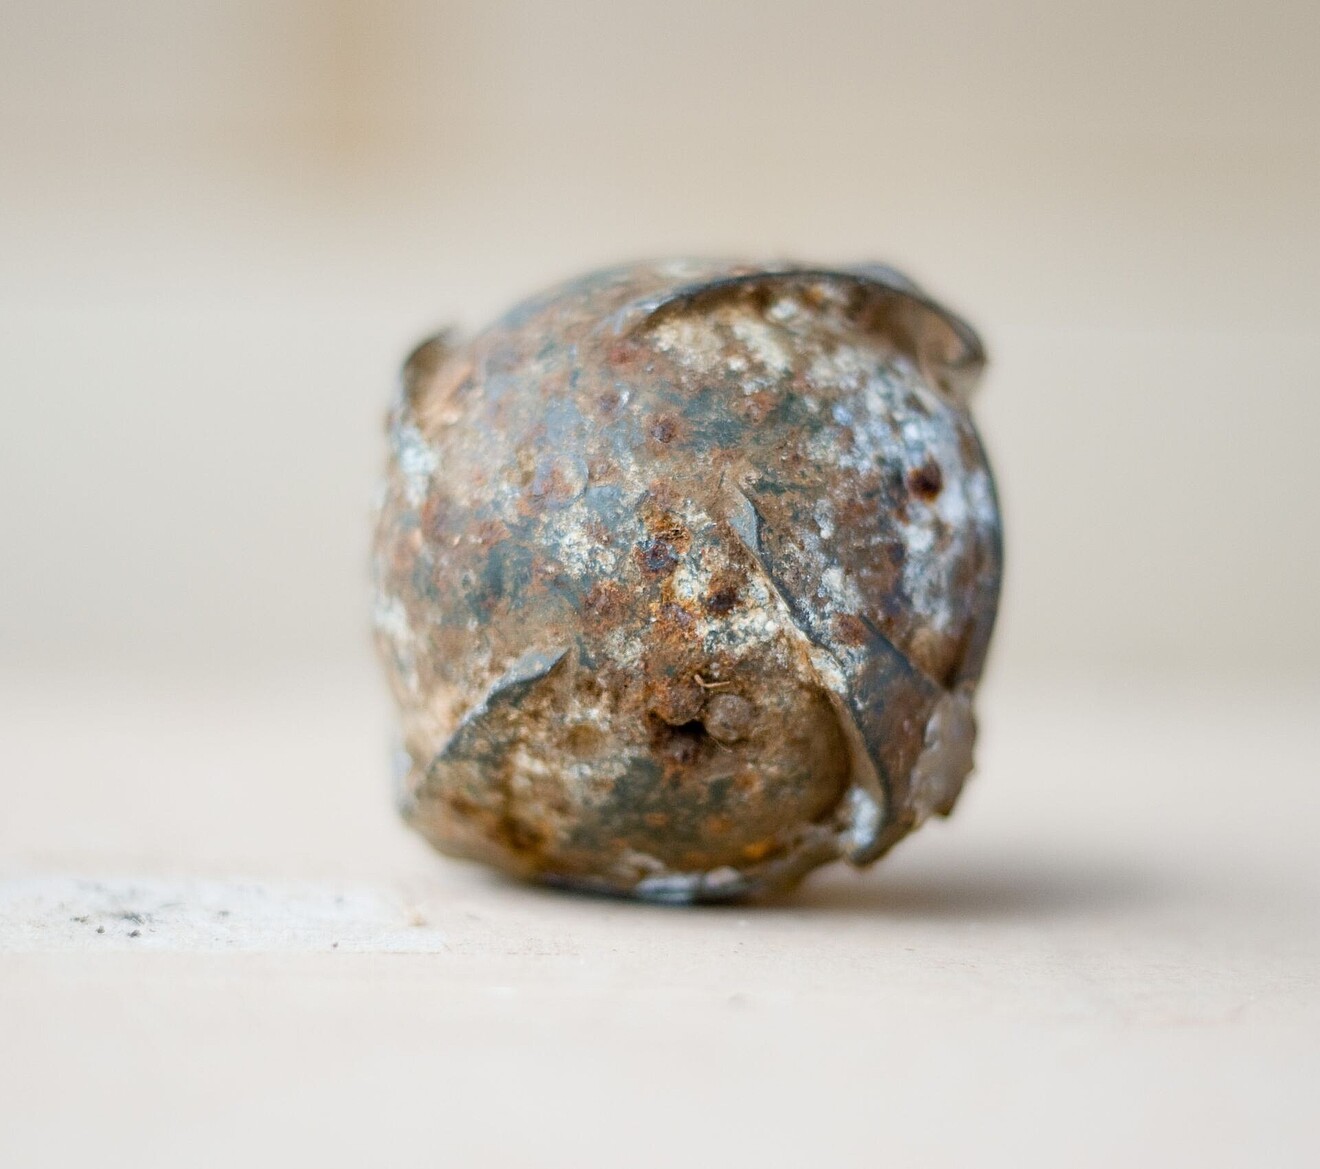 Die Submunition ist ein runder metallischer Ball, schmutzig und rostig.